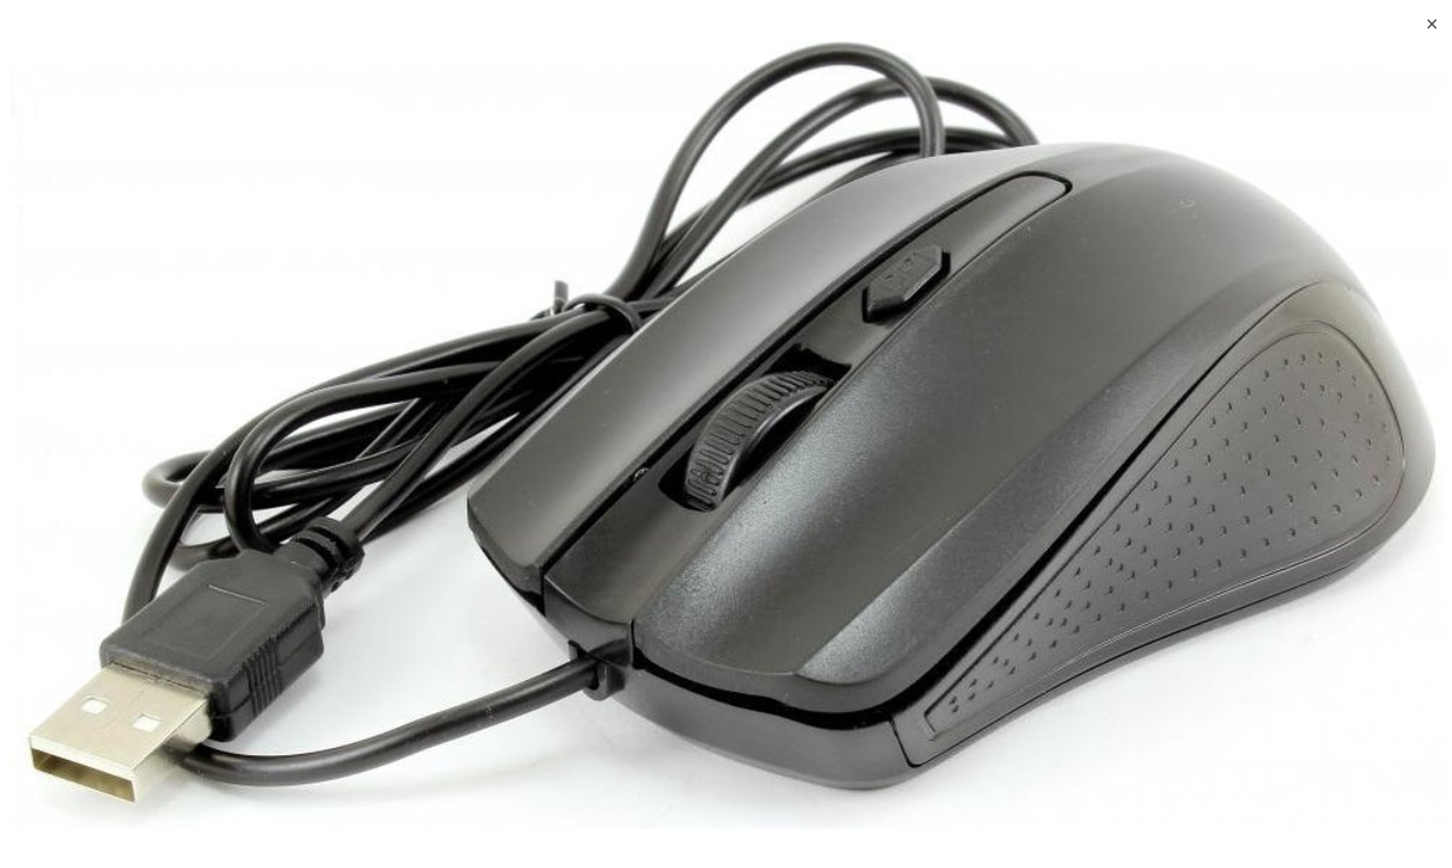 Muis met kabel G-211-E Bedraad voor notebook, pc, Mac, laptop, computer / Windows - zwart